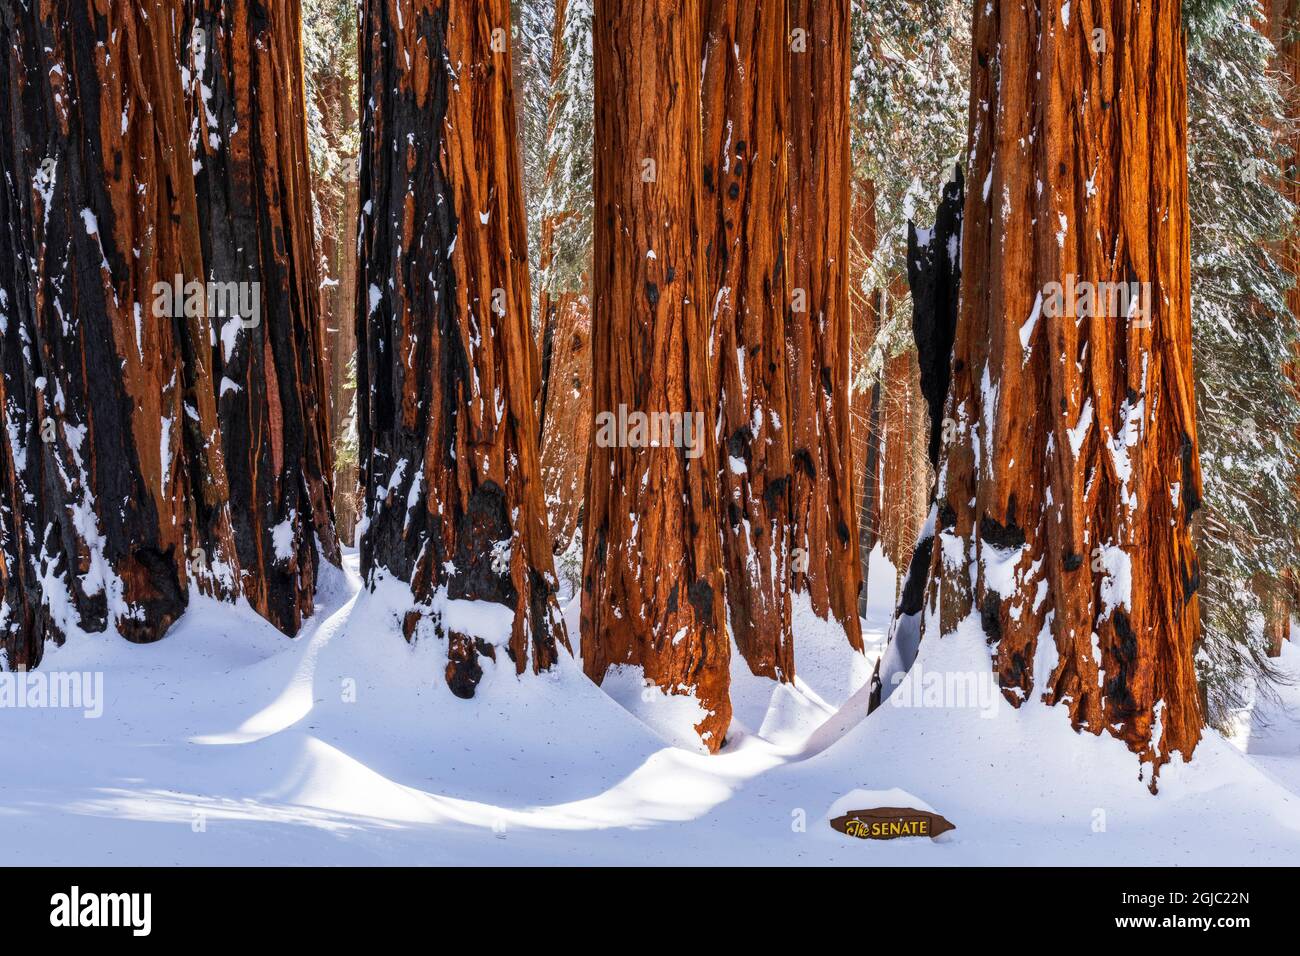 Die Senatsgruppe im Congress Grove im Winter, Giant Forest, Sequoia National Park, Kalifornien, USA. Stockfoto